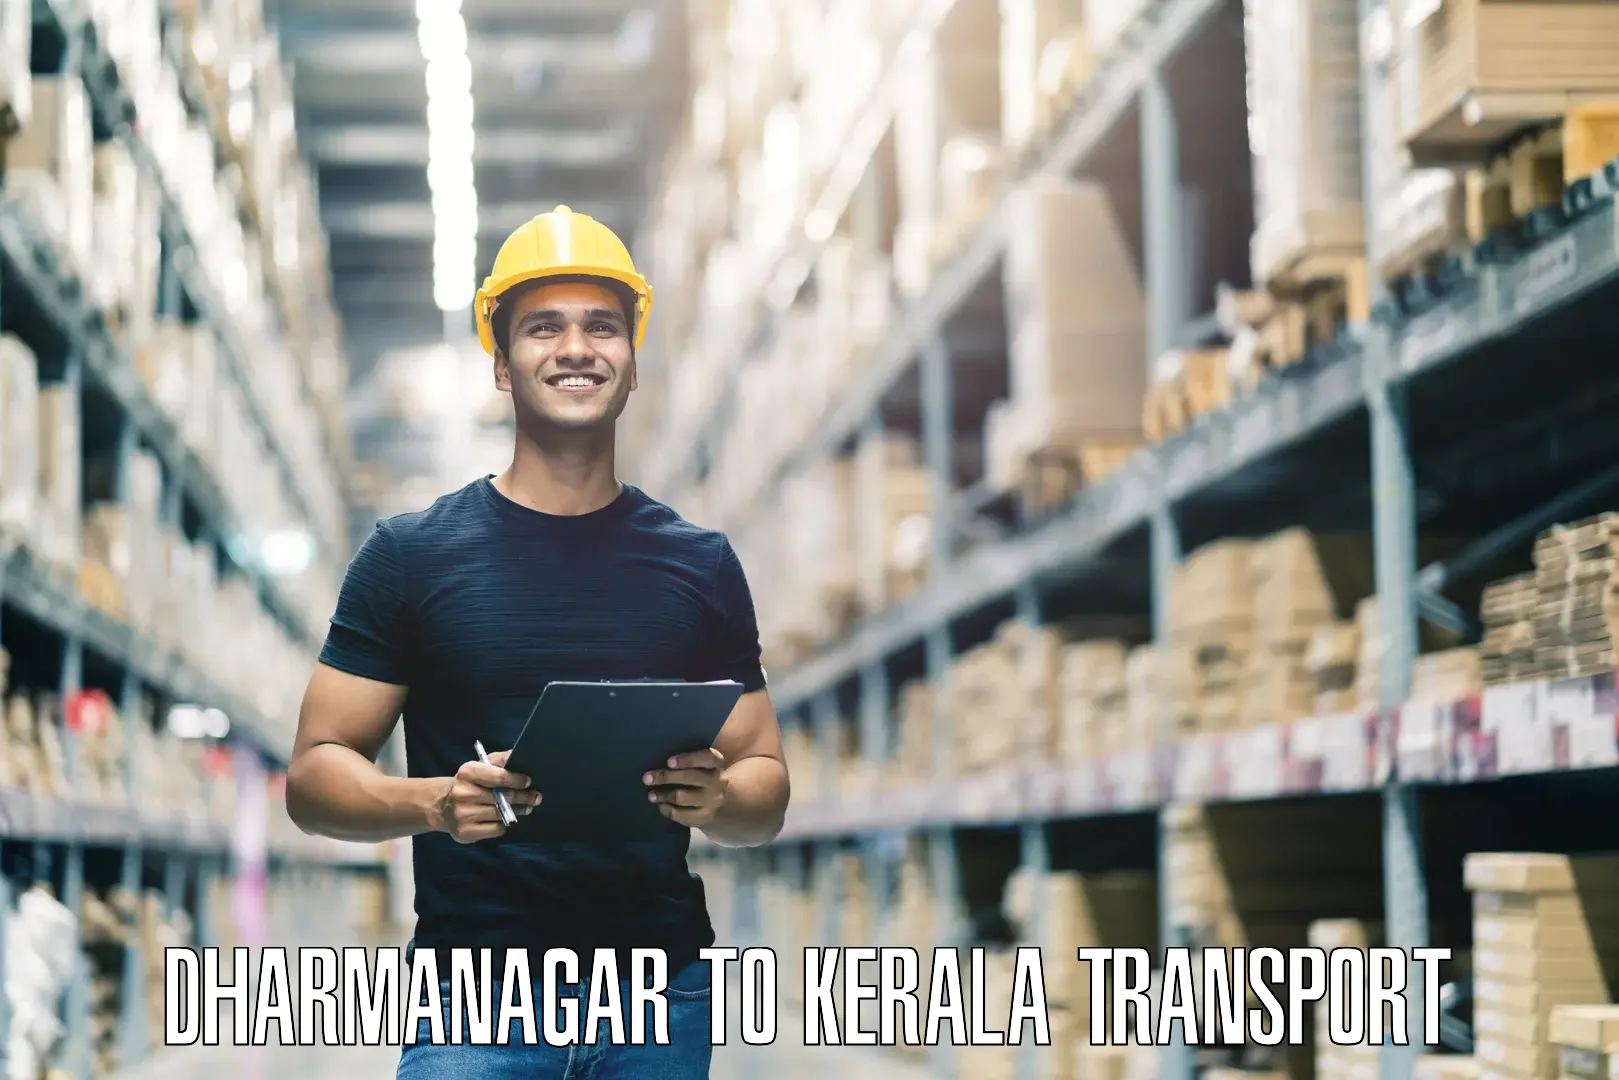 Delivery service Dharmanagar to Kadanad